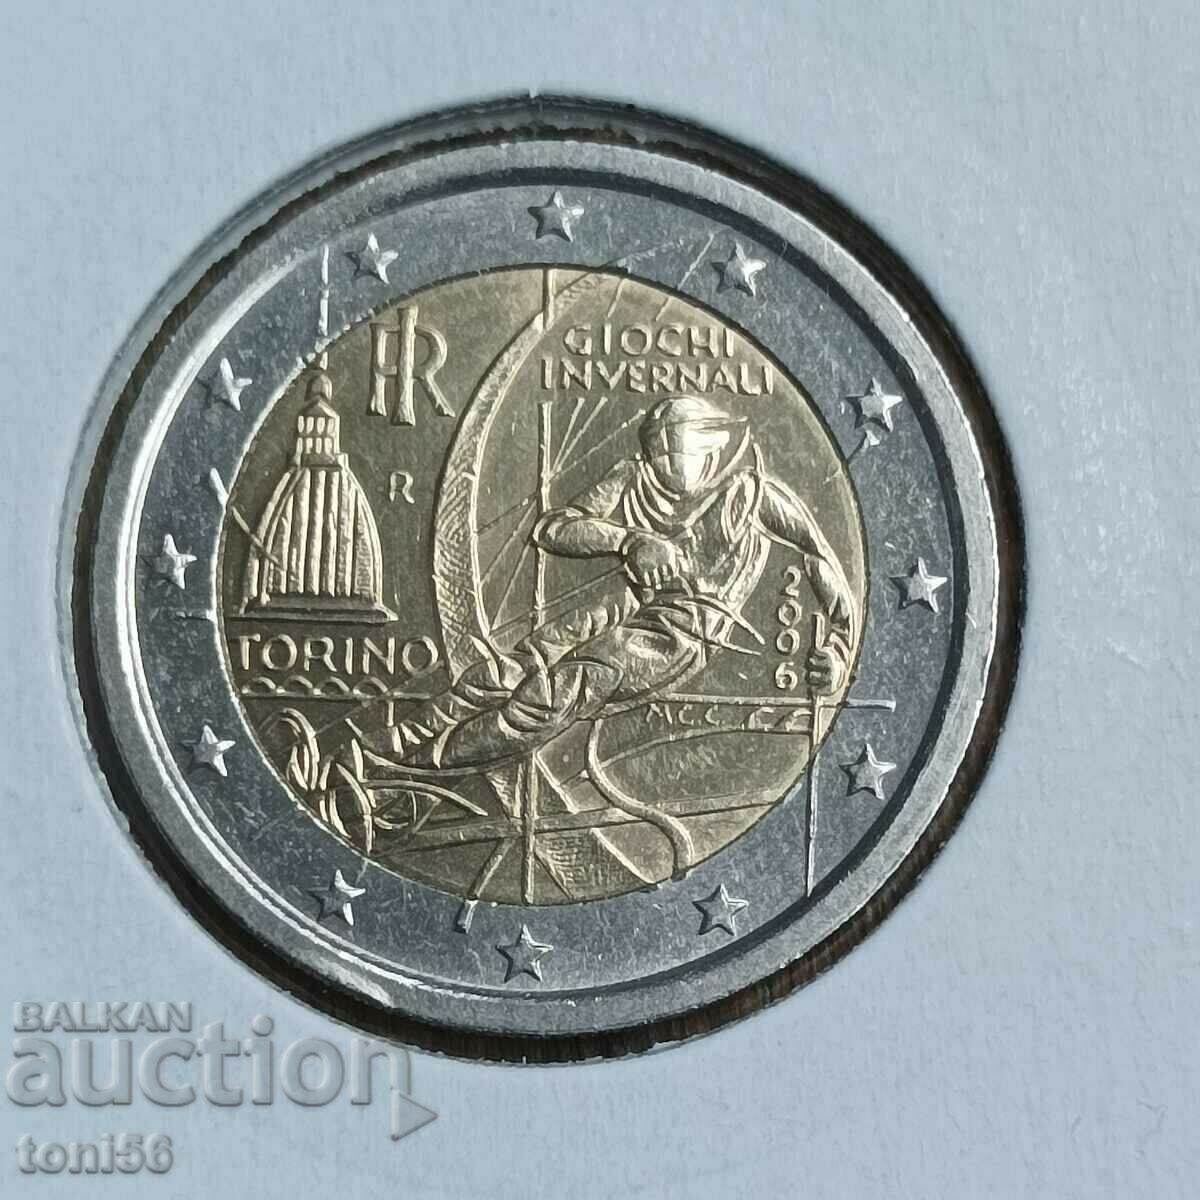 Italy 2 euro 2006 - Turin